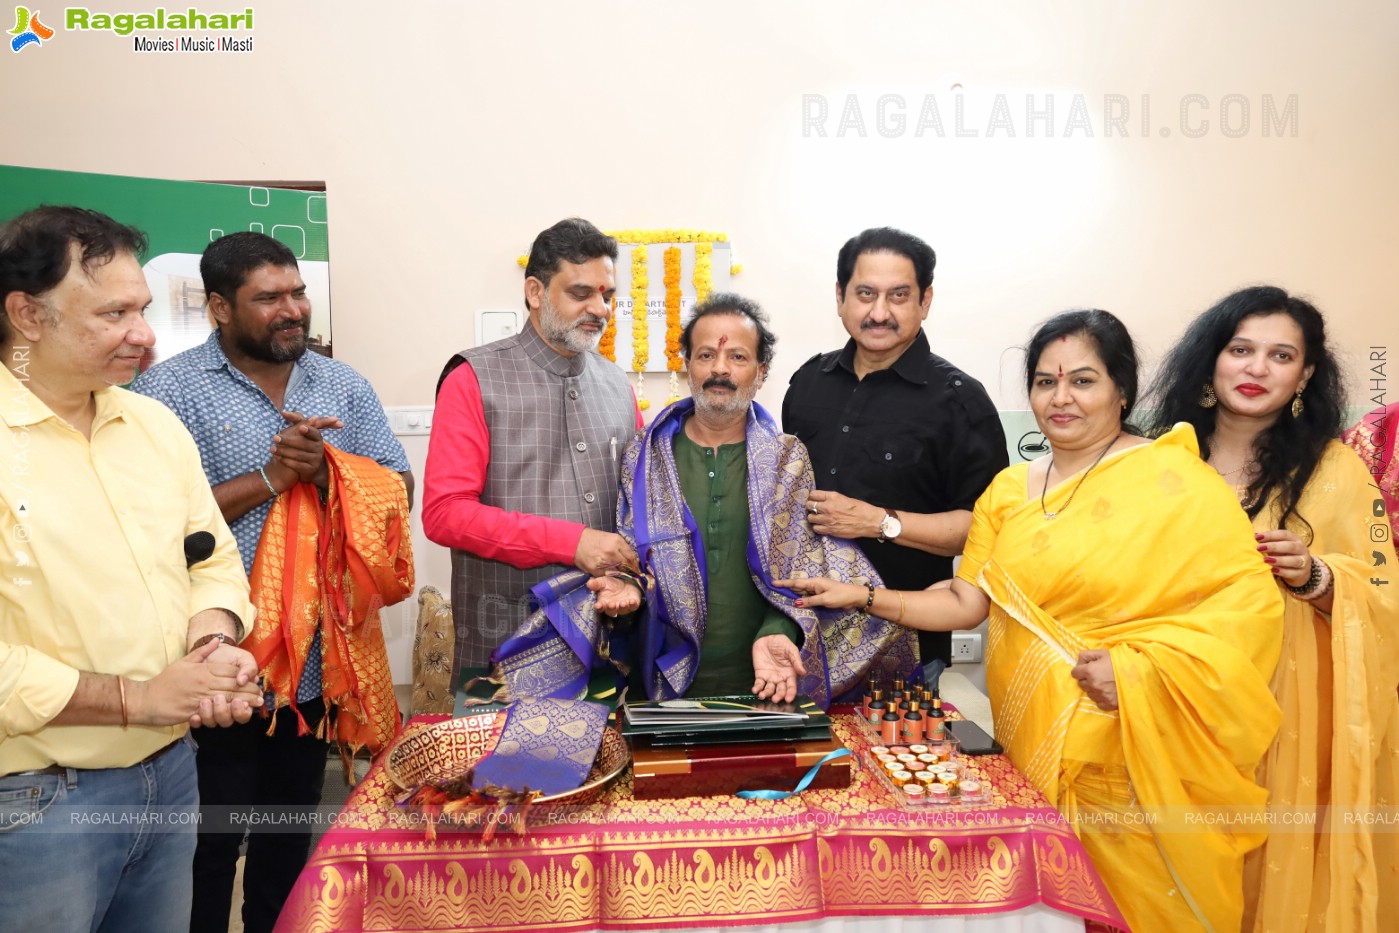 Ayurmegha's Bhamaveda Launch, Hyderabad